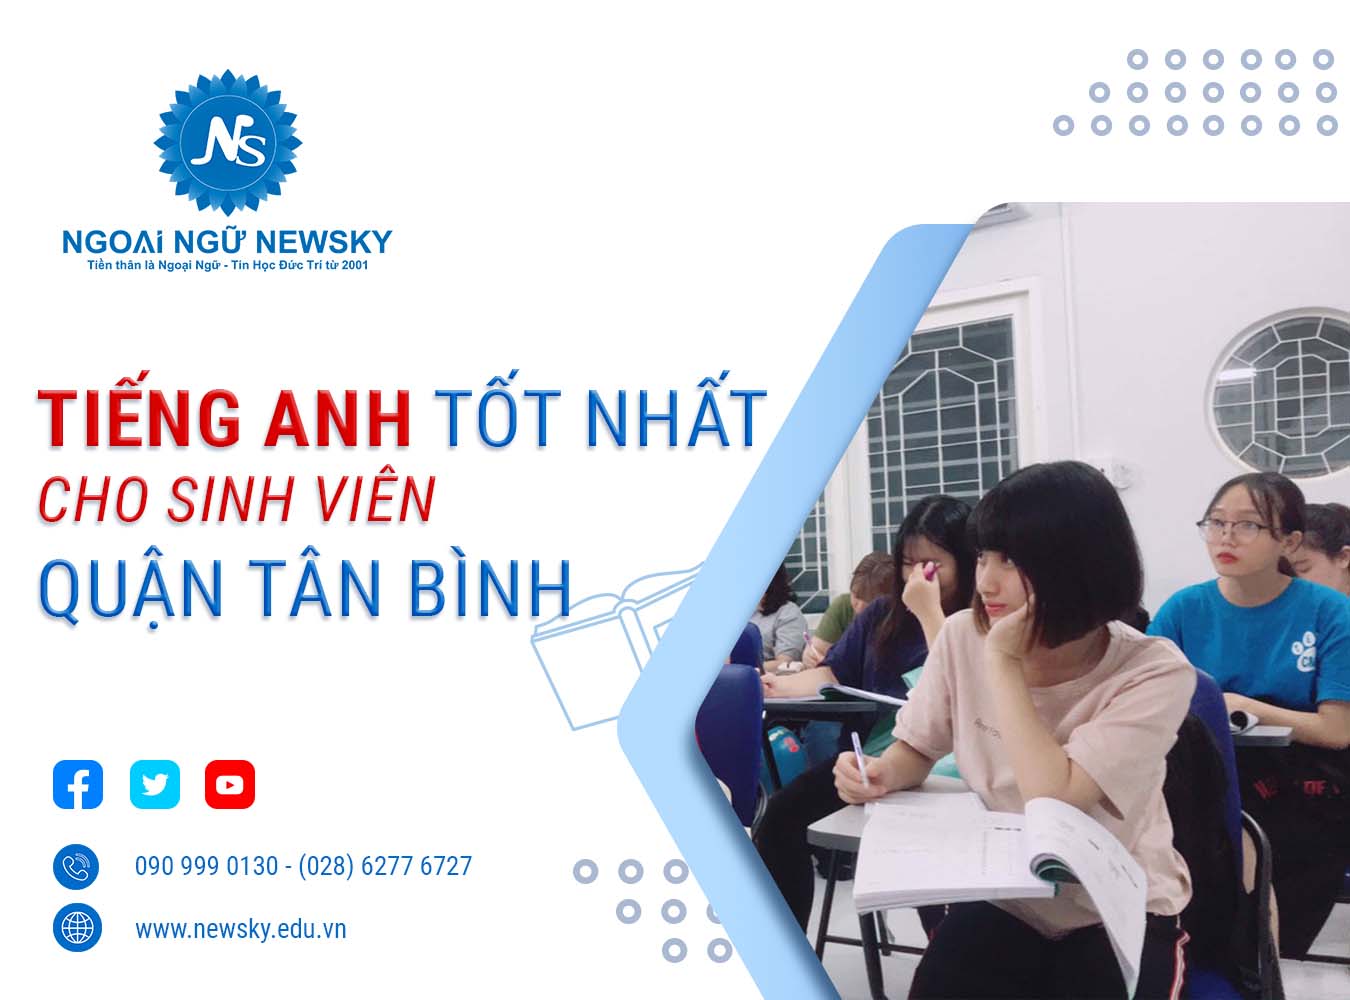 Tiếng Anh Tốt Nhất cho Sinh Viên quận Tân Bình